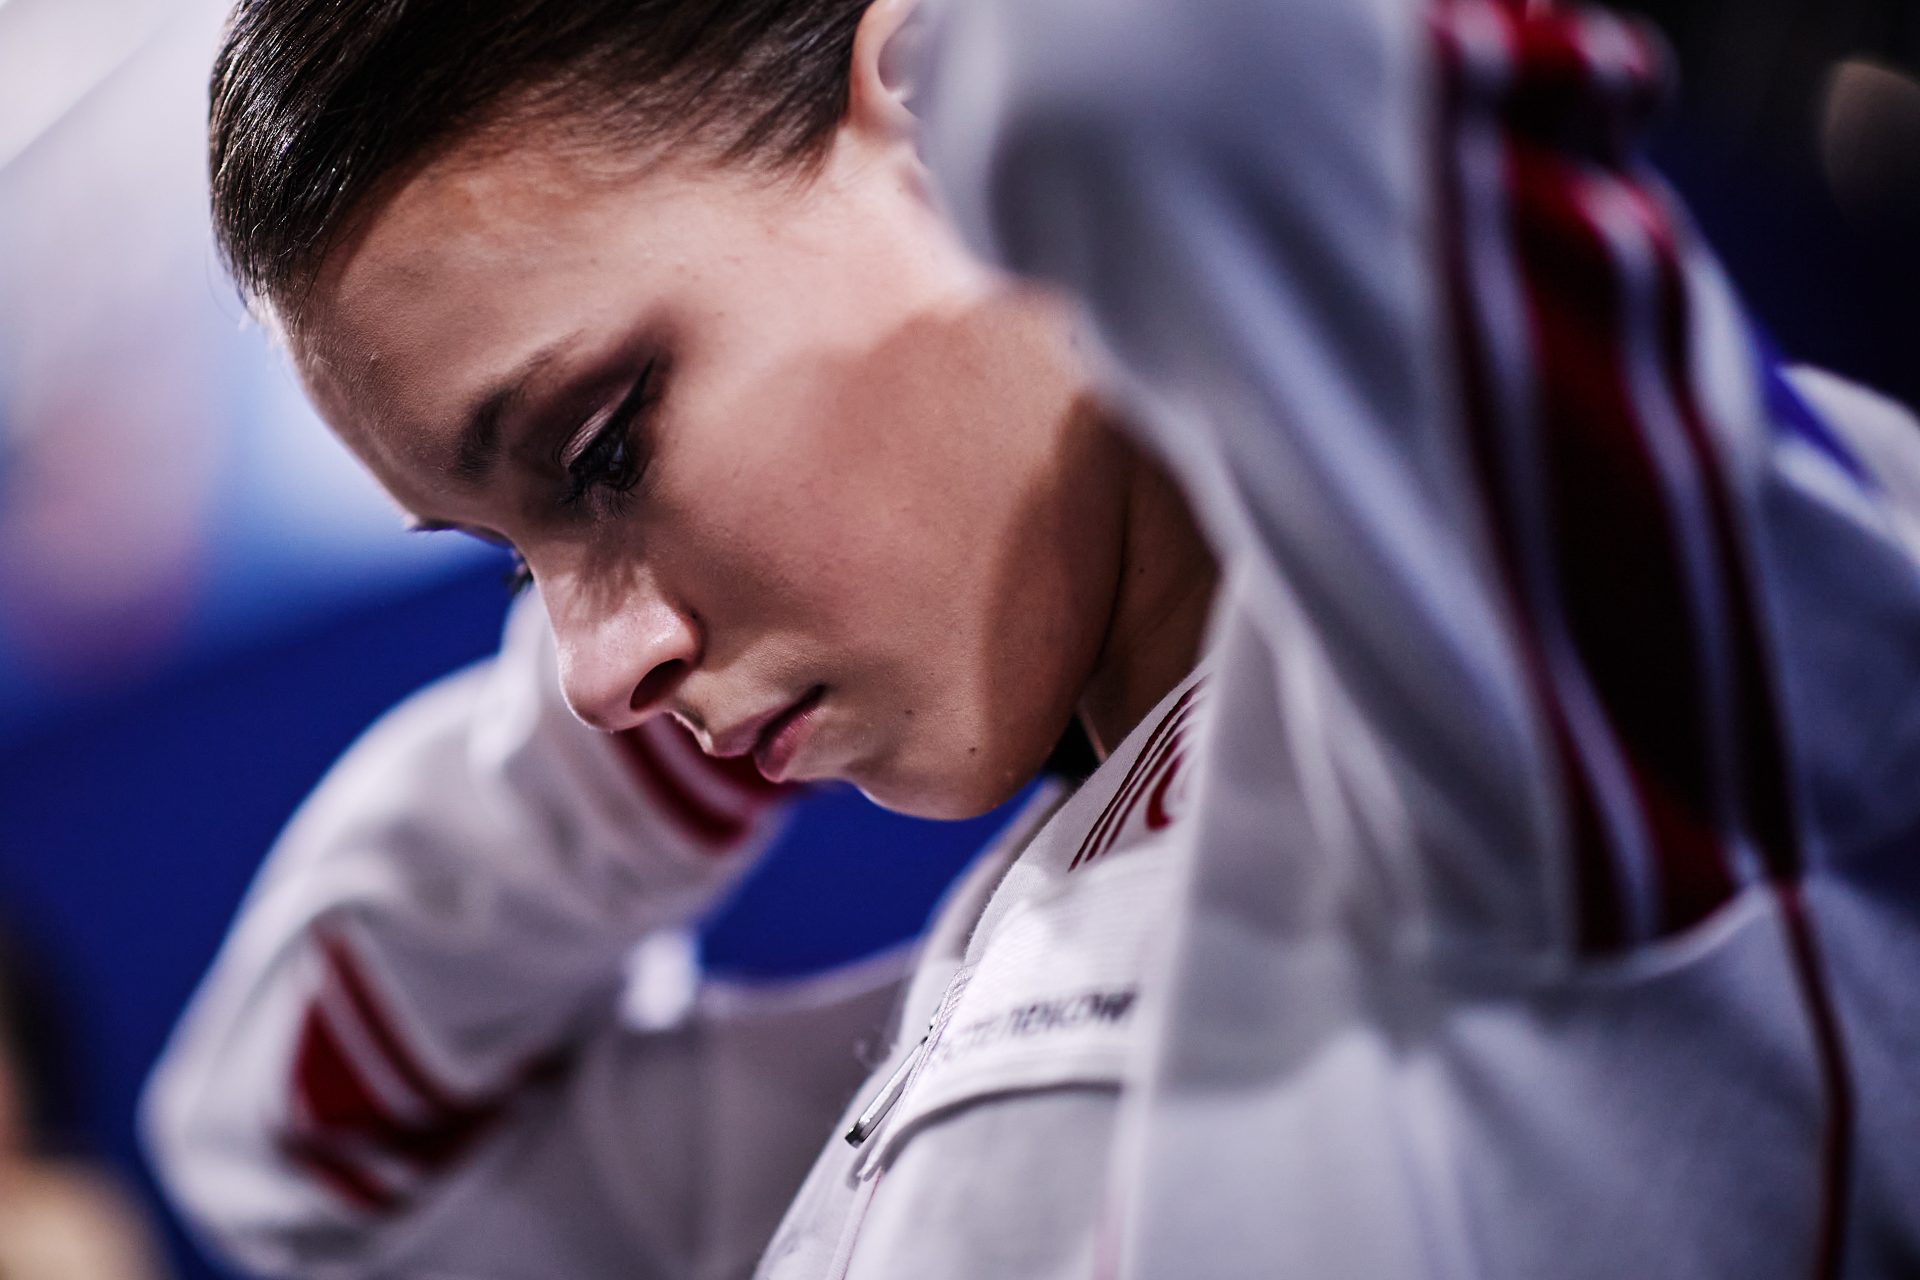 La enfermedad que truncó la carrera de la patinadora Anna Shcherbakova a los 19 años